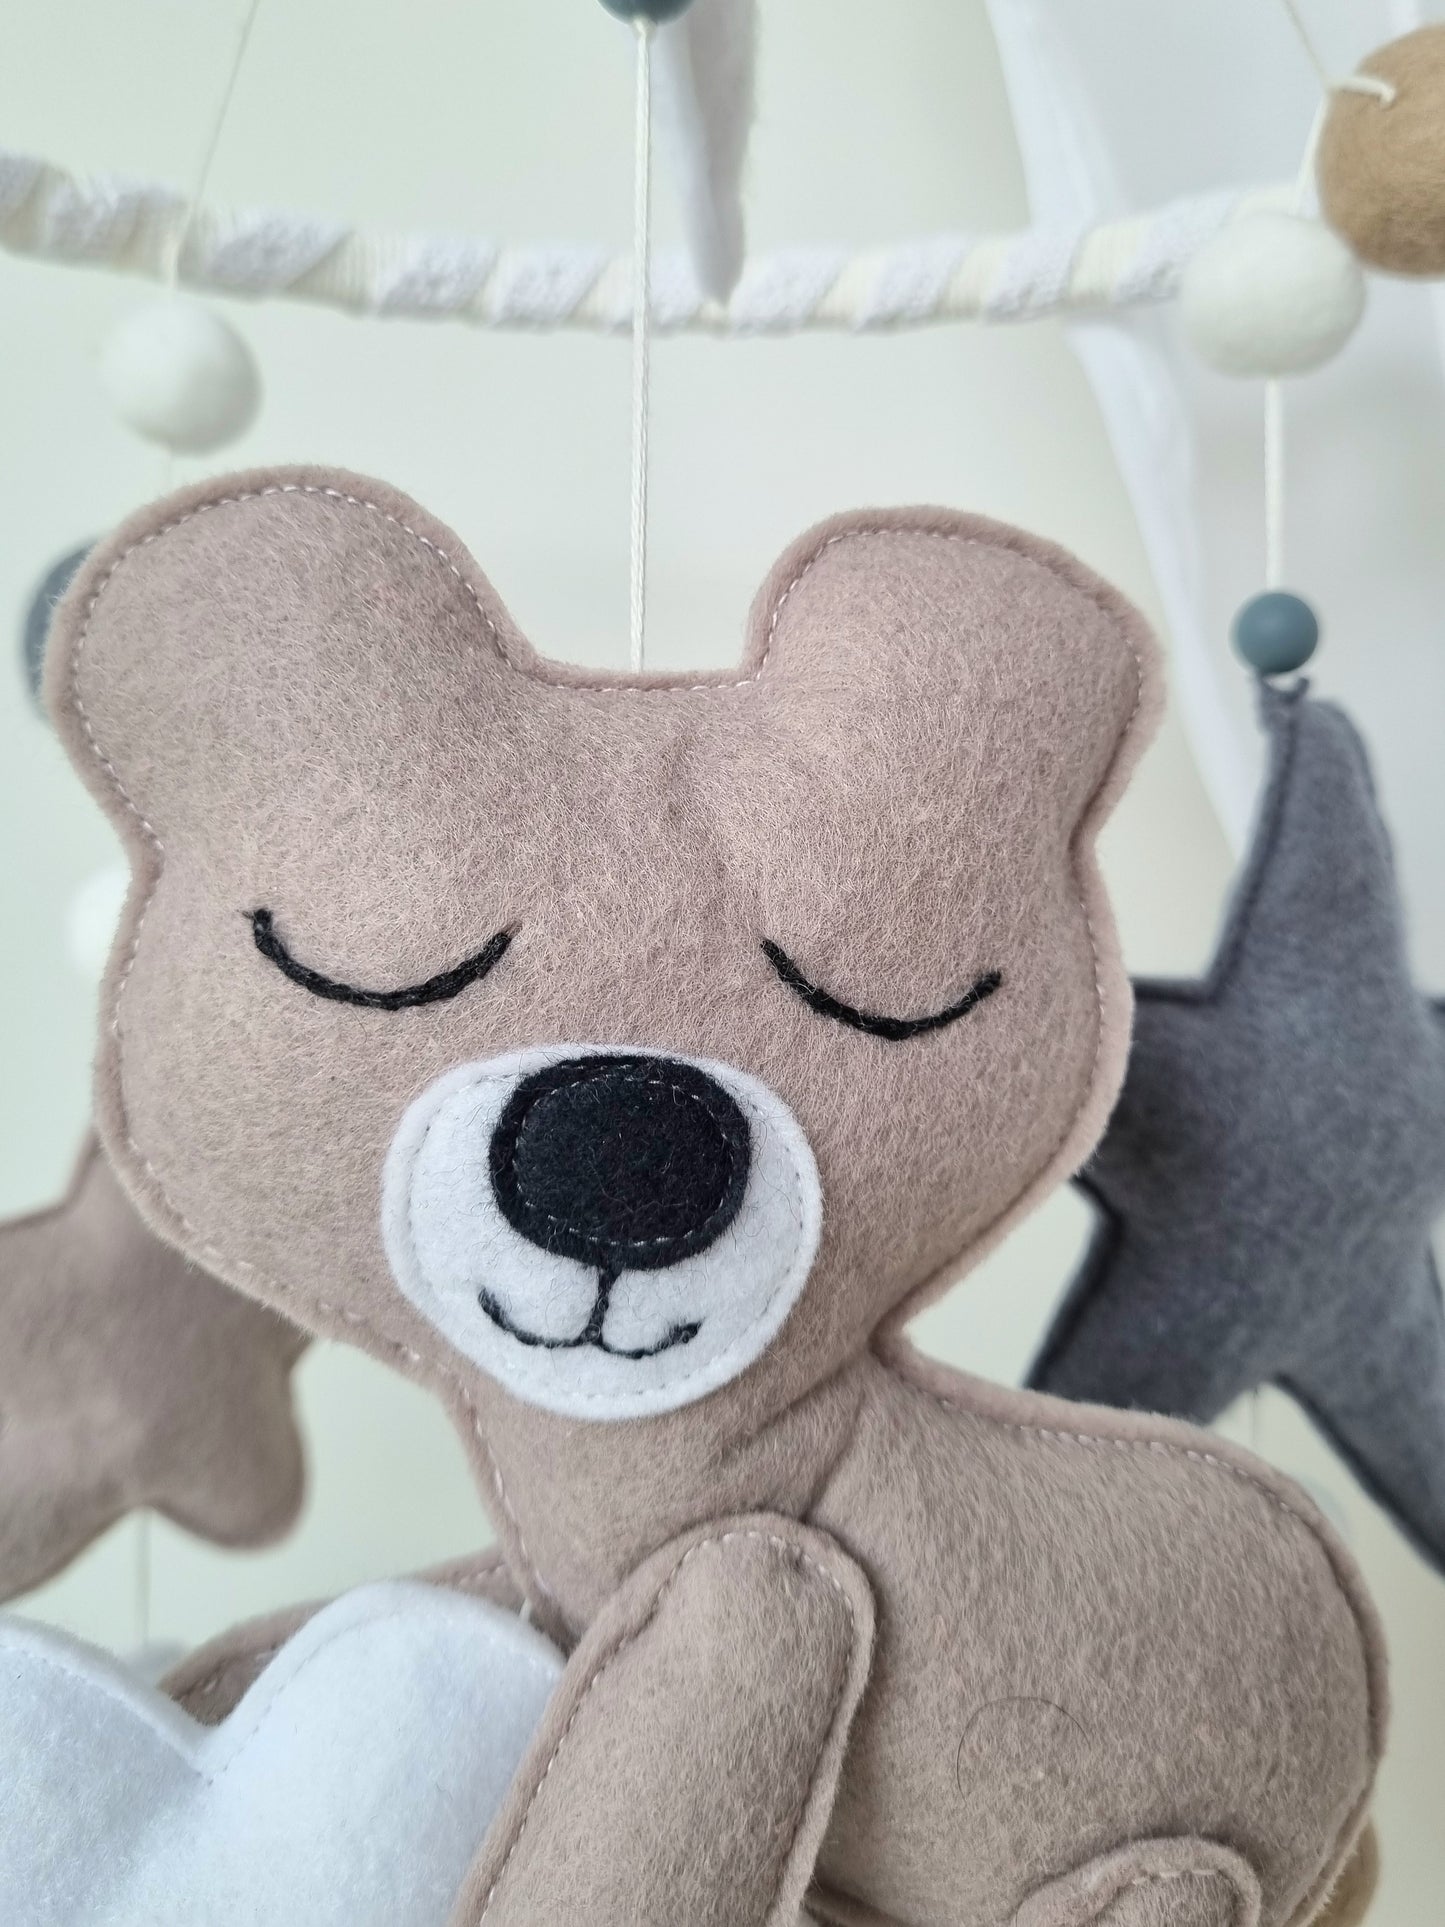 Baby Mobile schlafender Bär beige